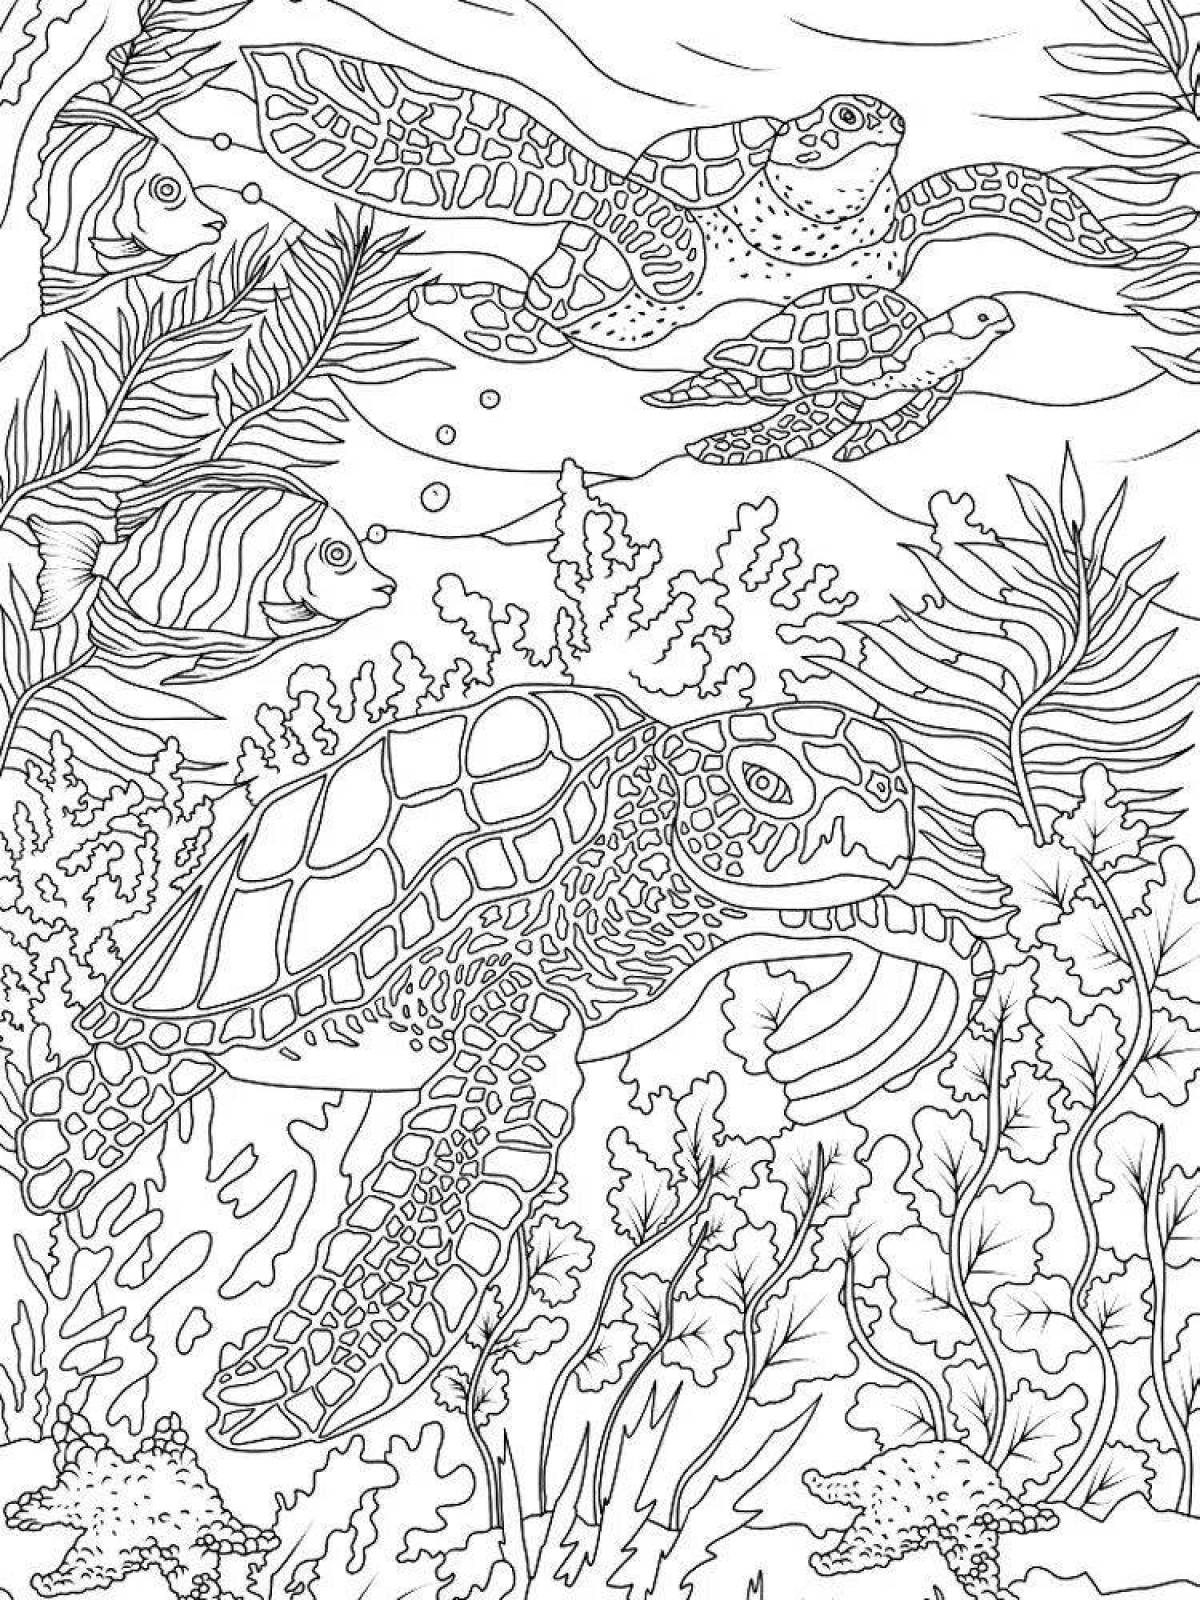 Serene coloring page подводный мир антистресс